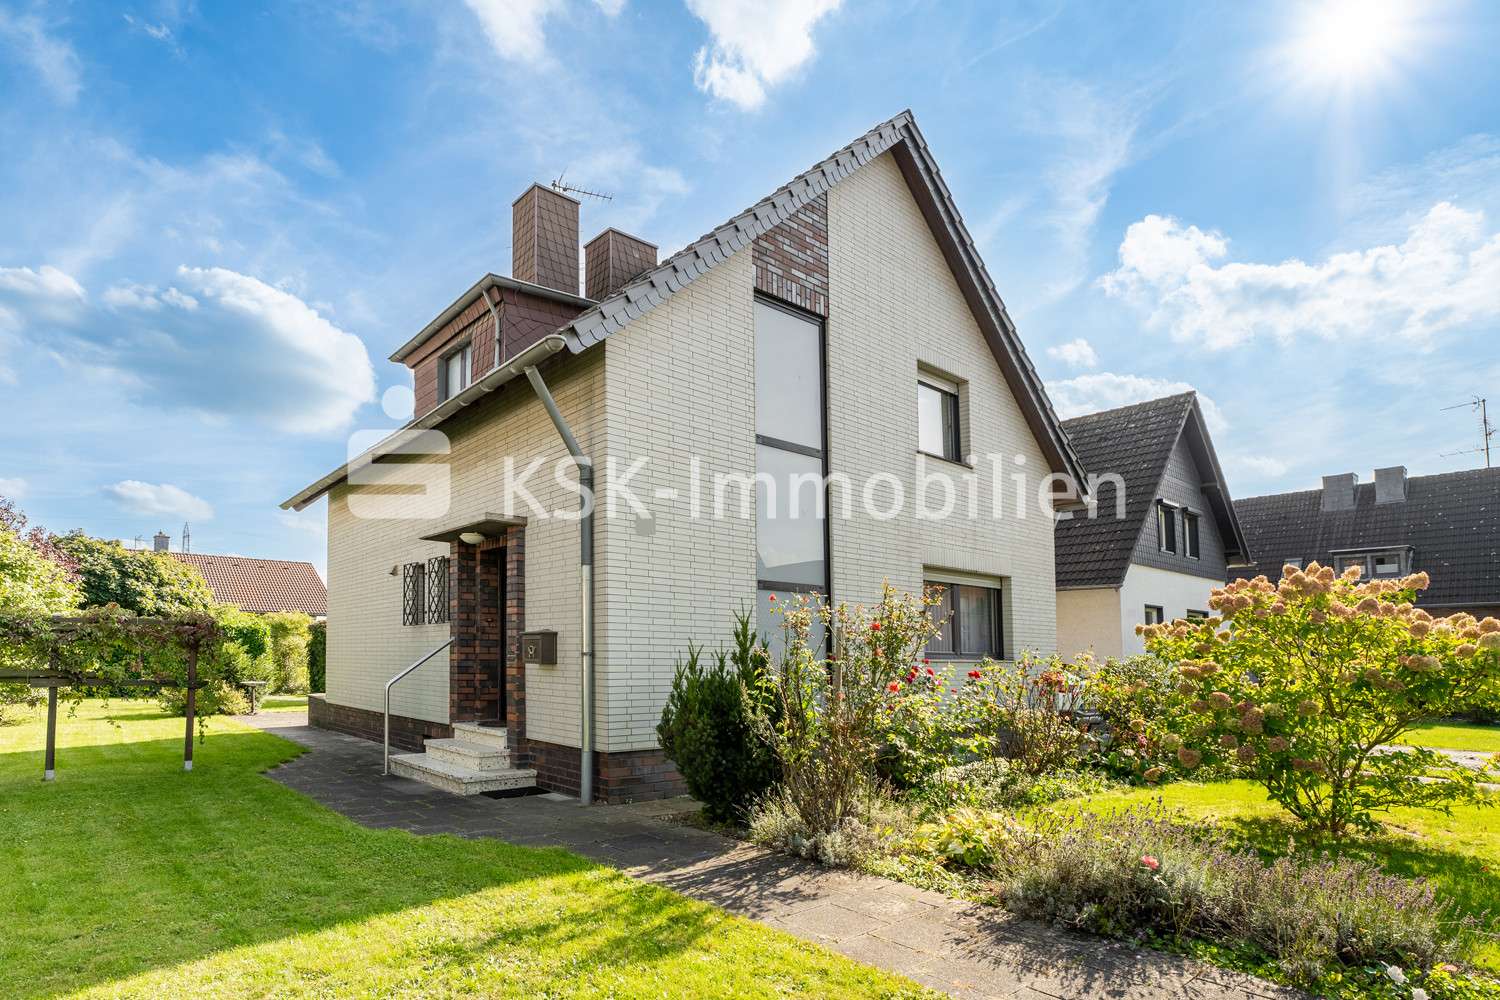 121044 Vorderansicht (3) - Einfamilienhaus in 50374 Erftstadt / Kierdorf mit 103m² kaufen